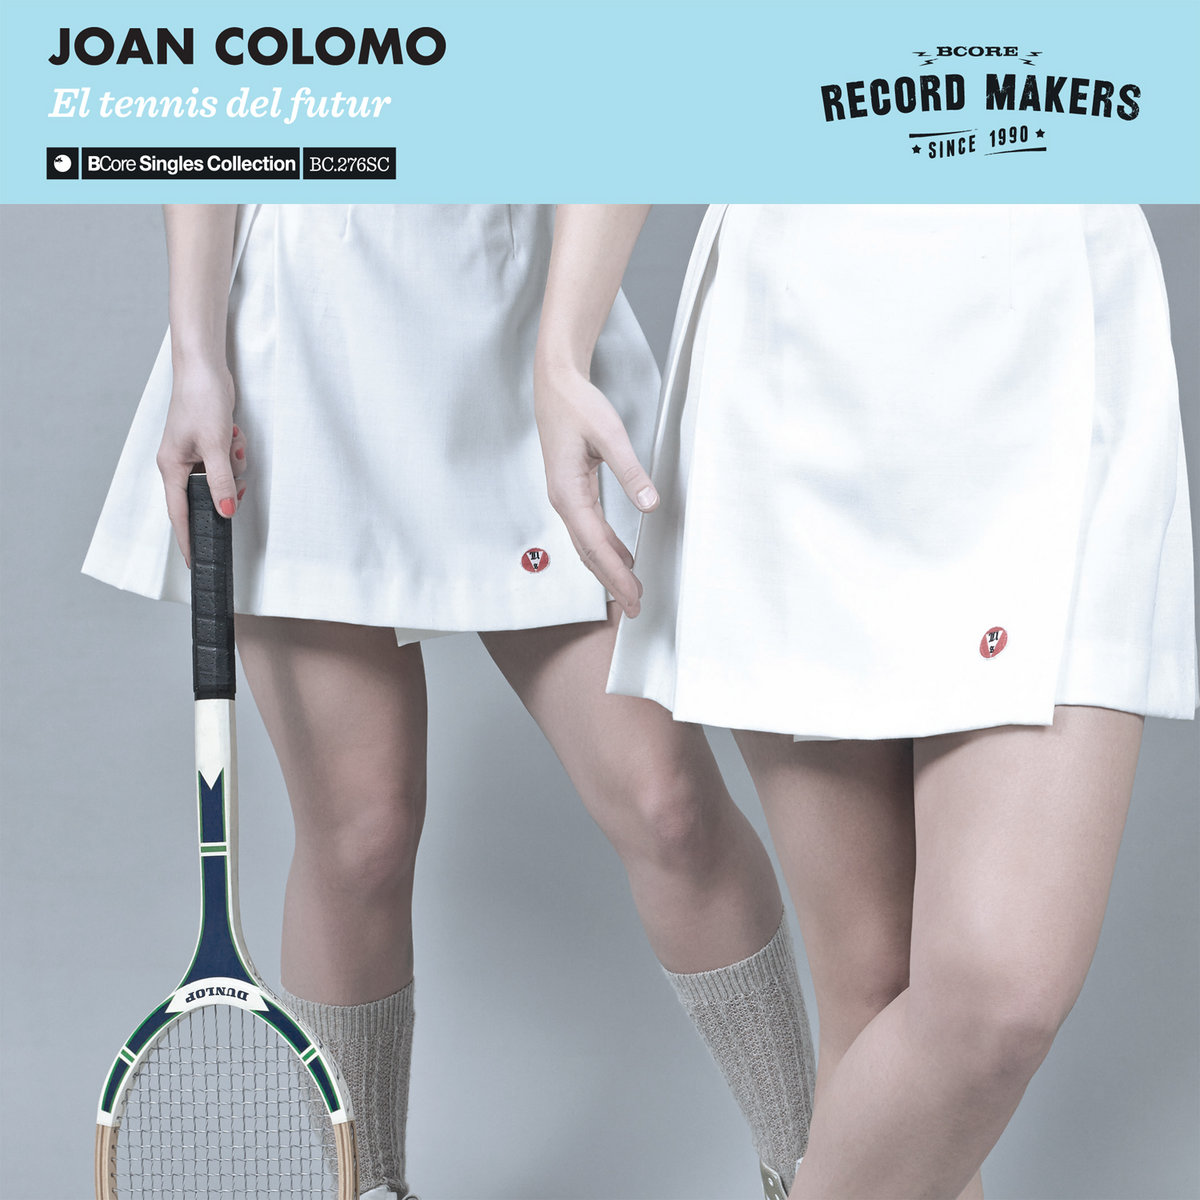 Joan Colomo "El tennis del futur"